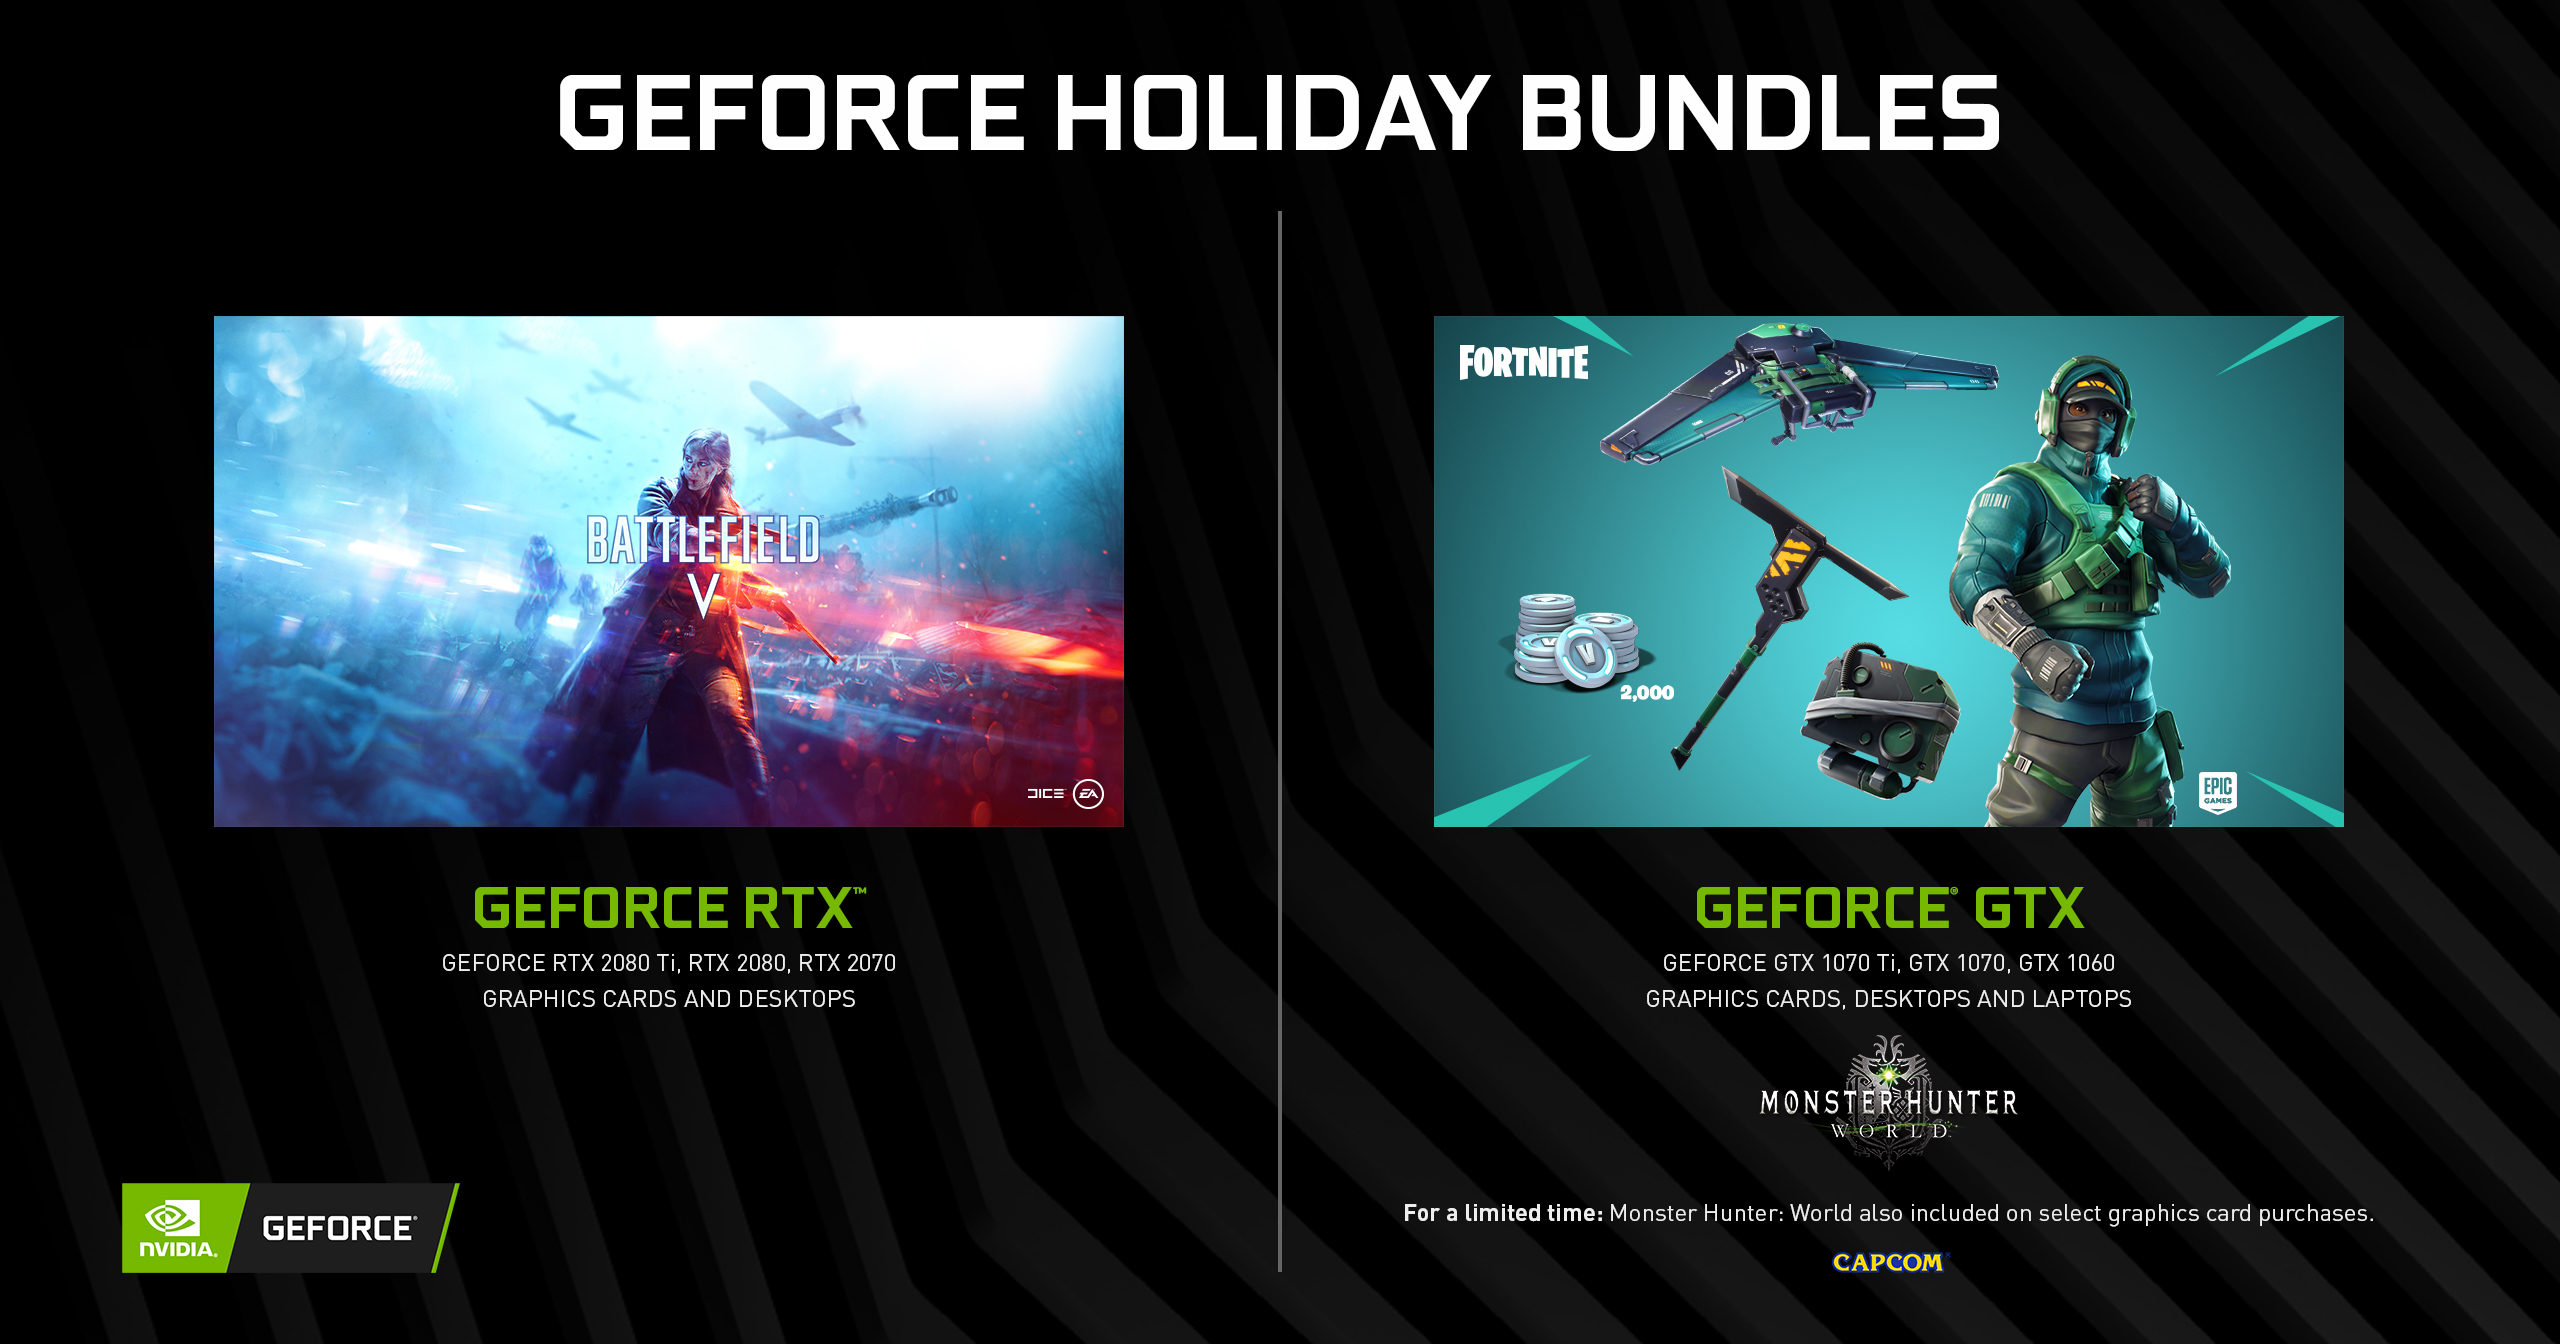 GeForce GTX Fortnite Bundle Begins 